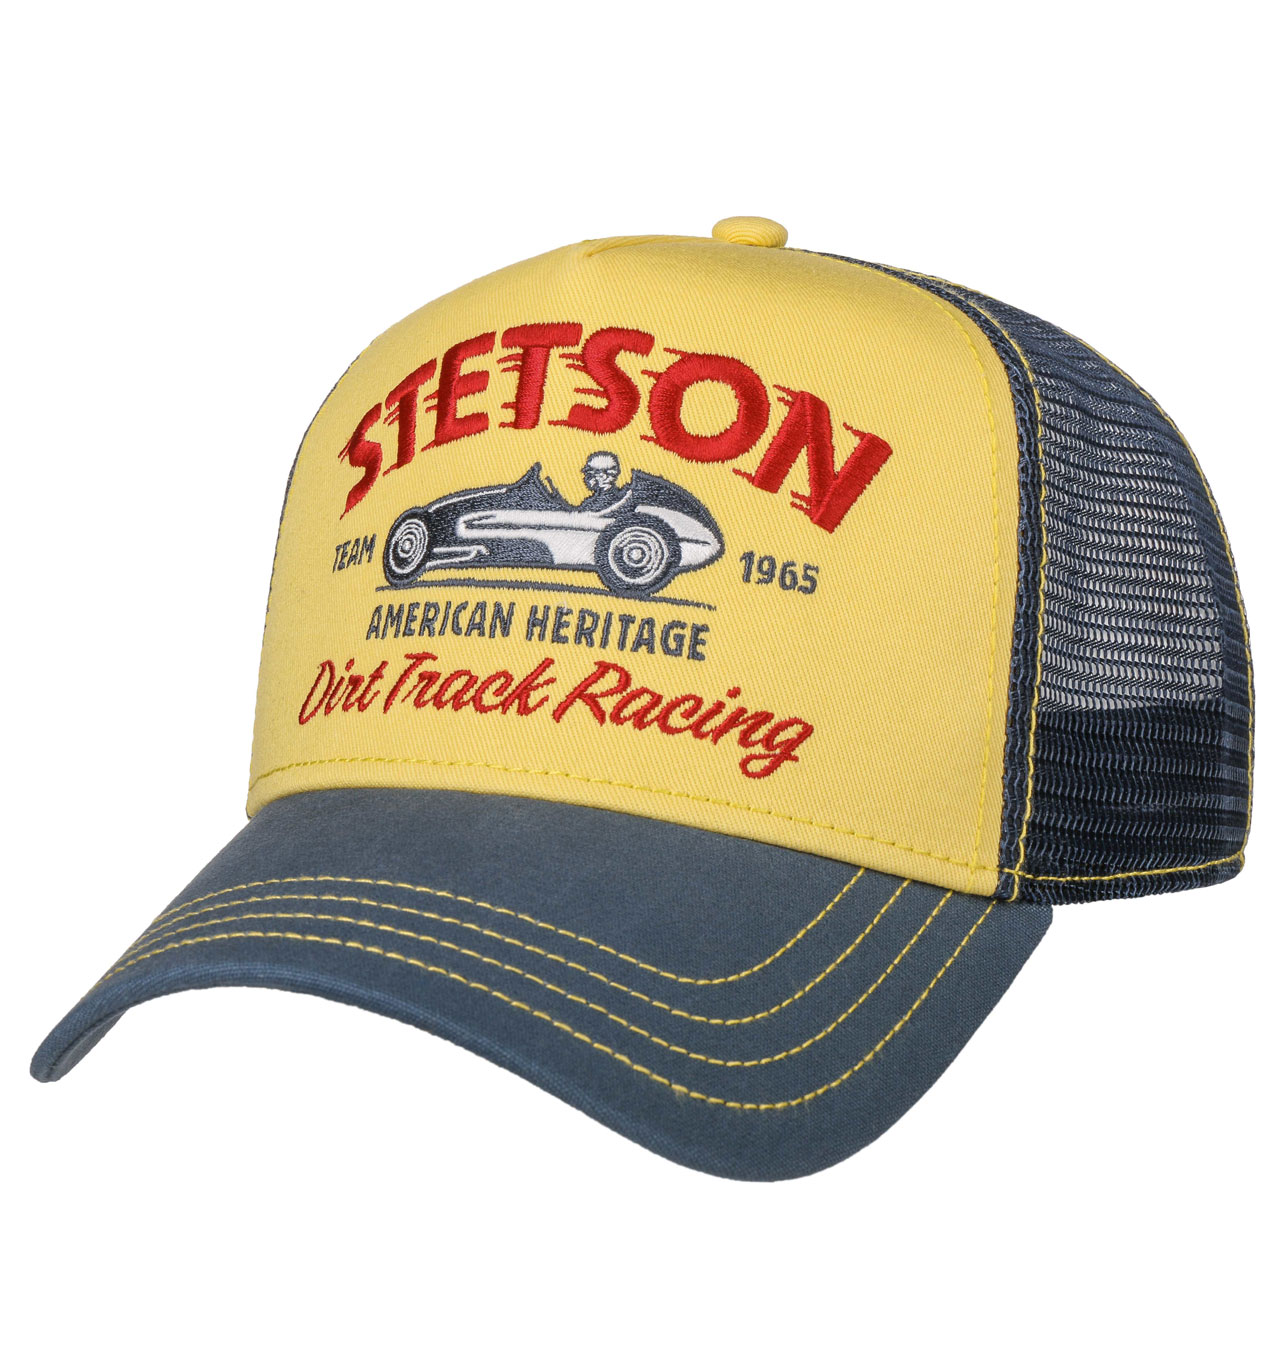 Stetson - Dirt Track Racing Trucker Cap